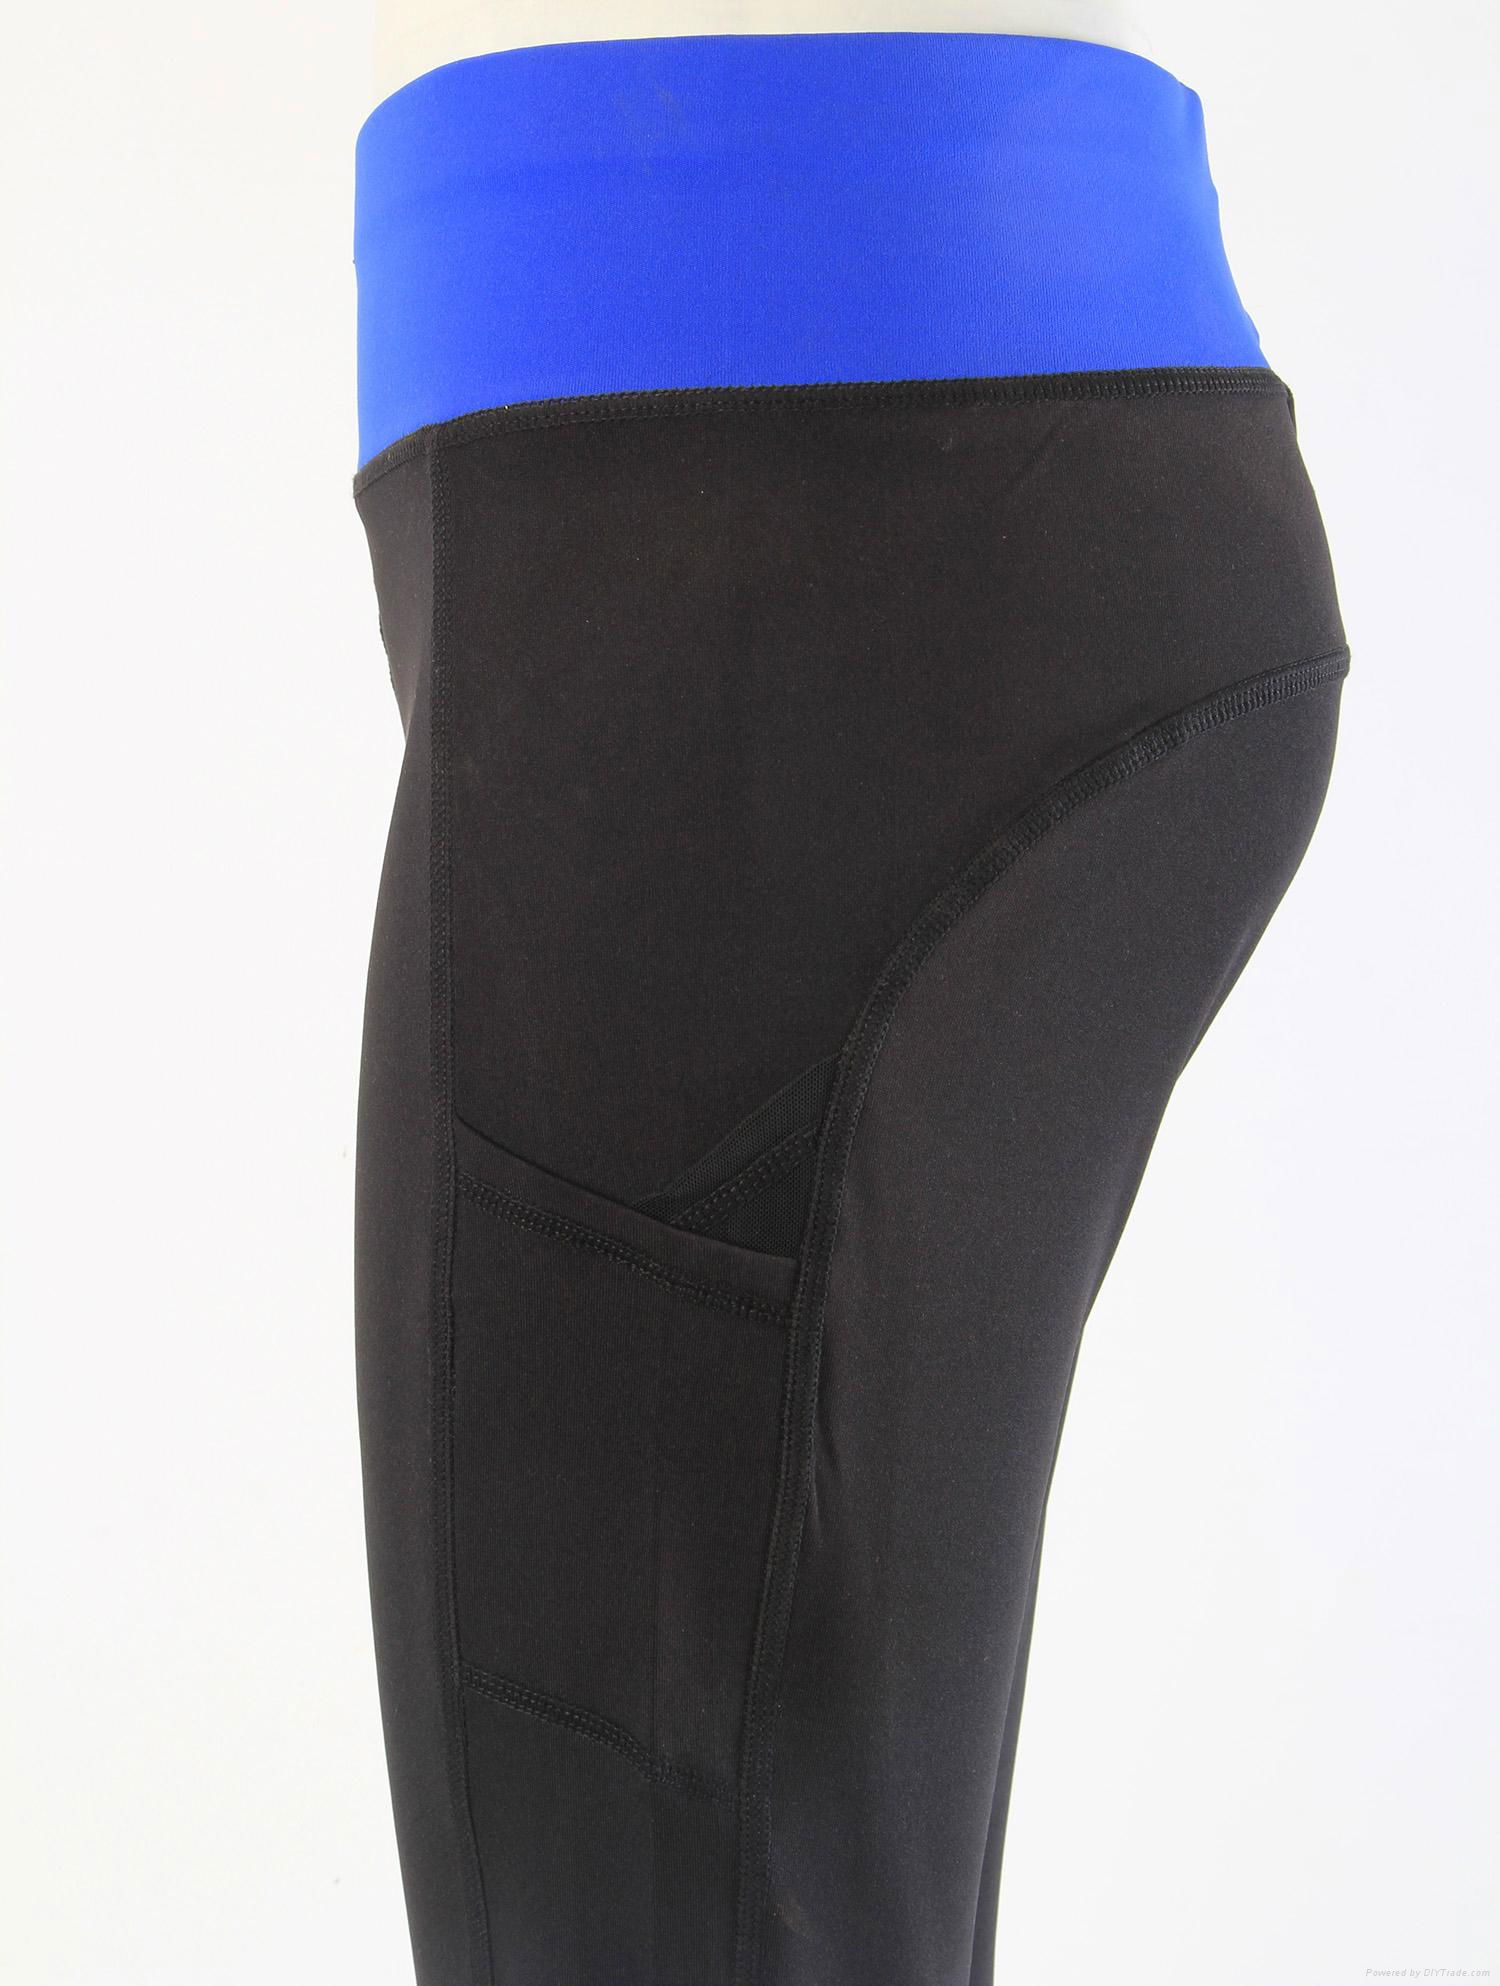 New Black Yoga Tight Leggings Yoga Sports Pants 3